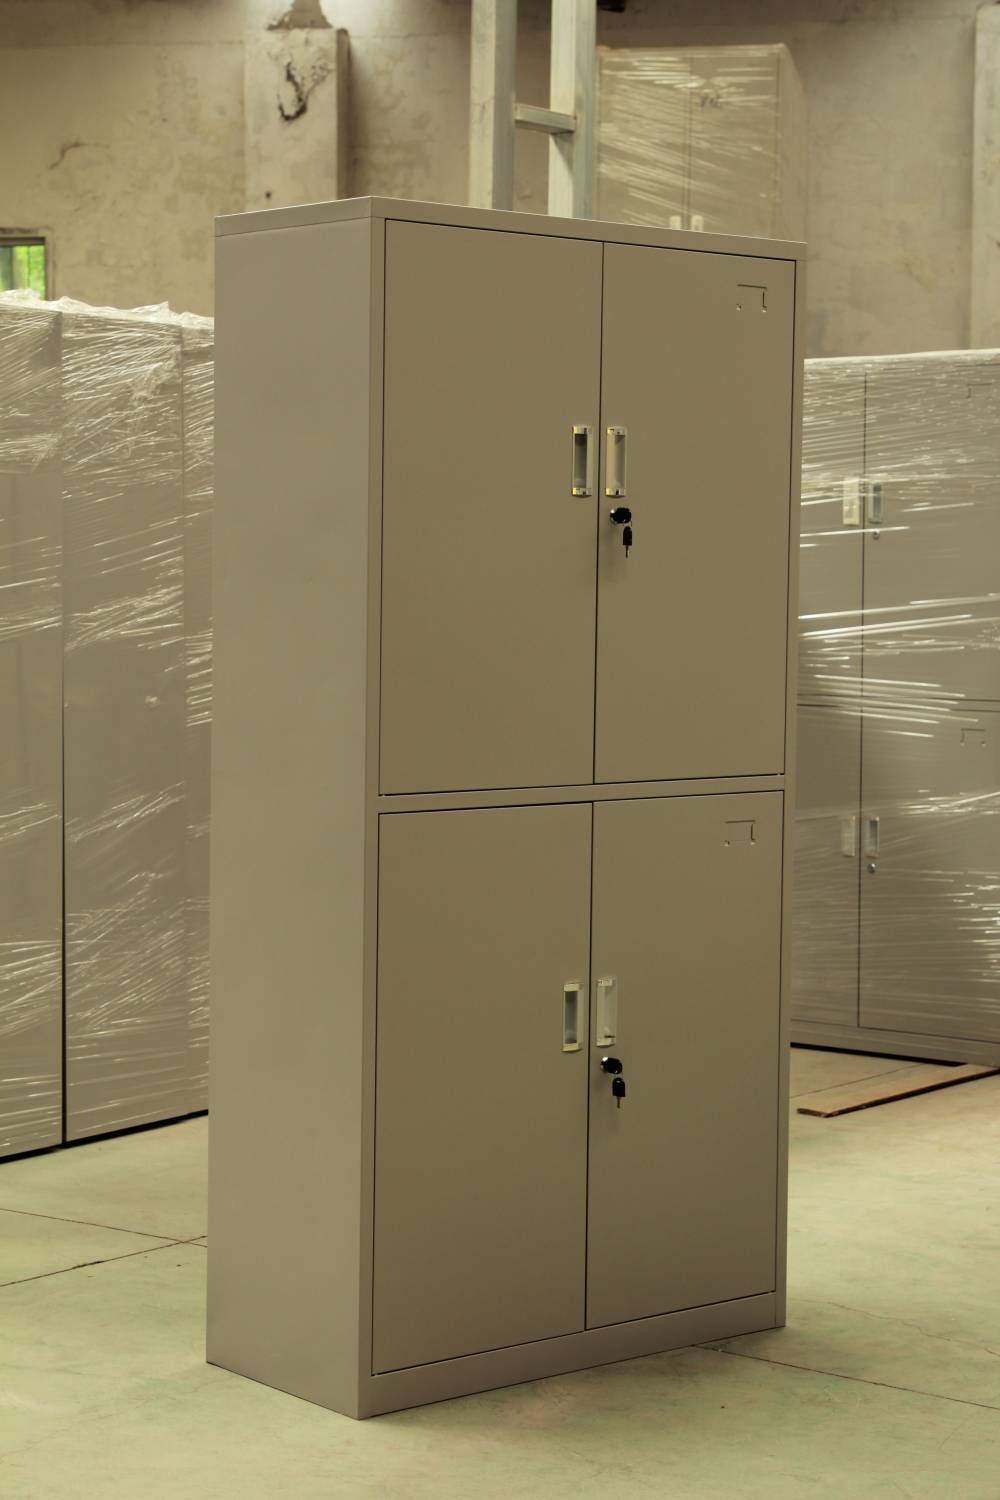 生产直销钢制文件柜 更衣柜 档案柜 等钢制家具